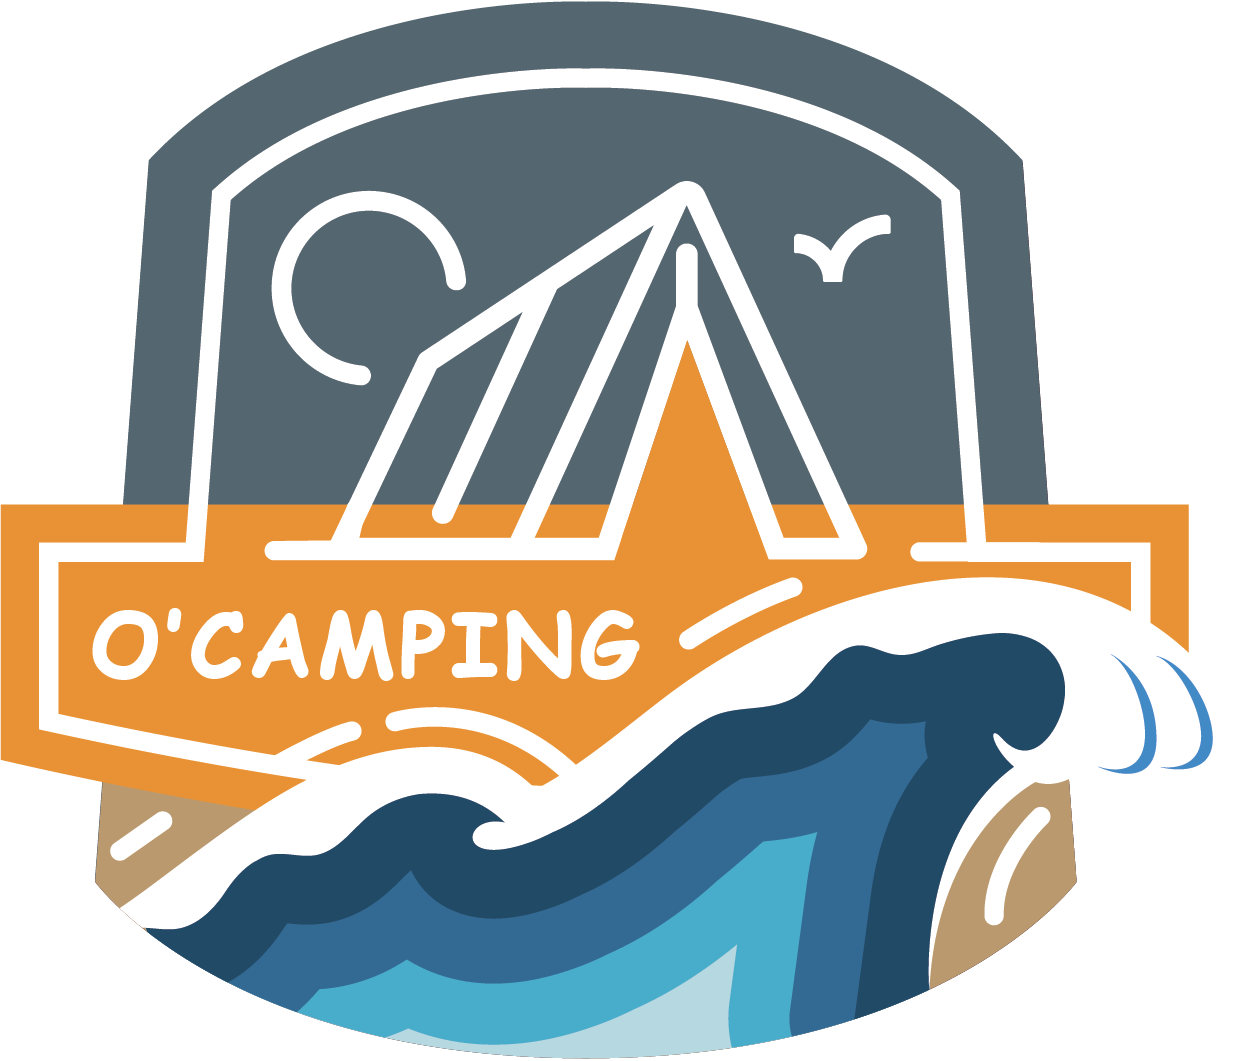 O’Camping logo